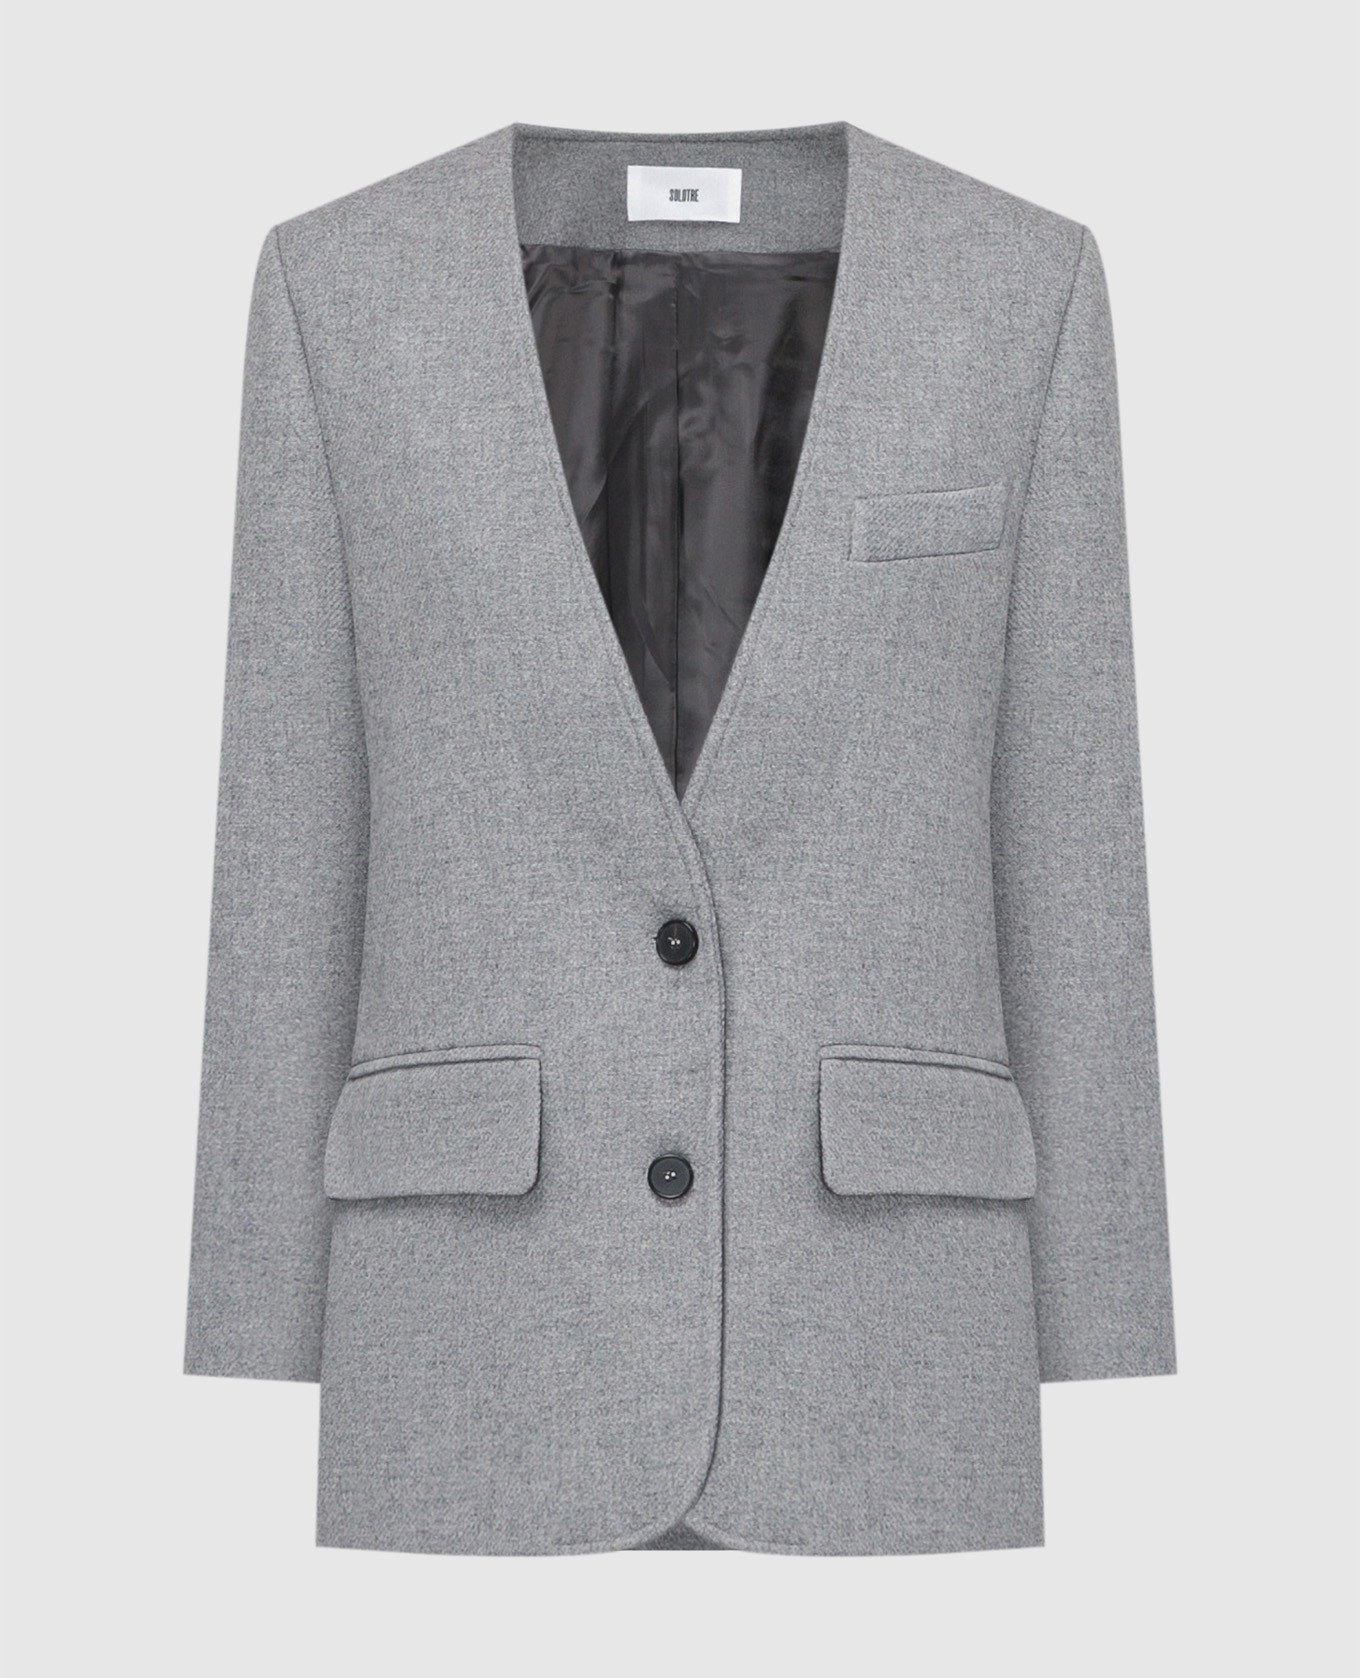 Gray jacket